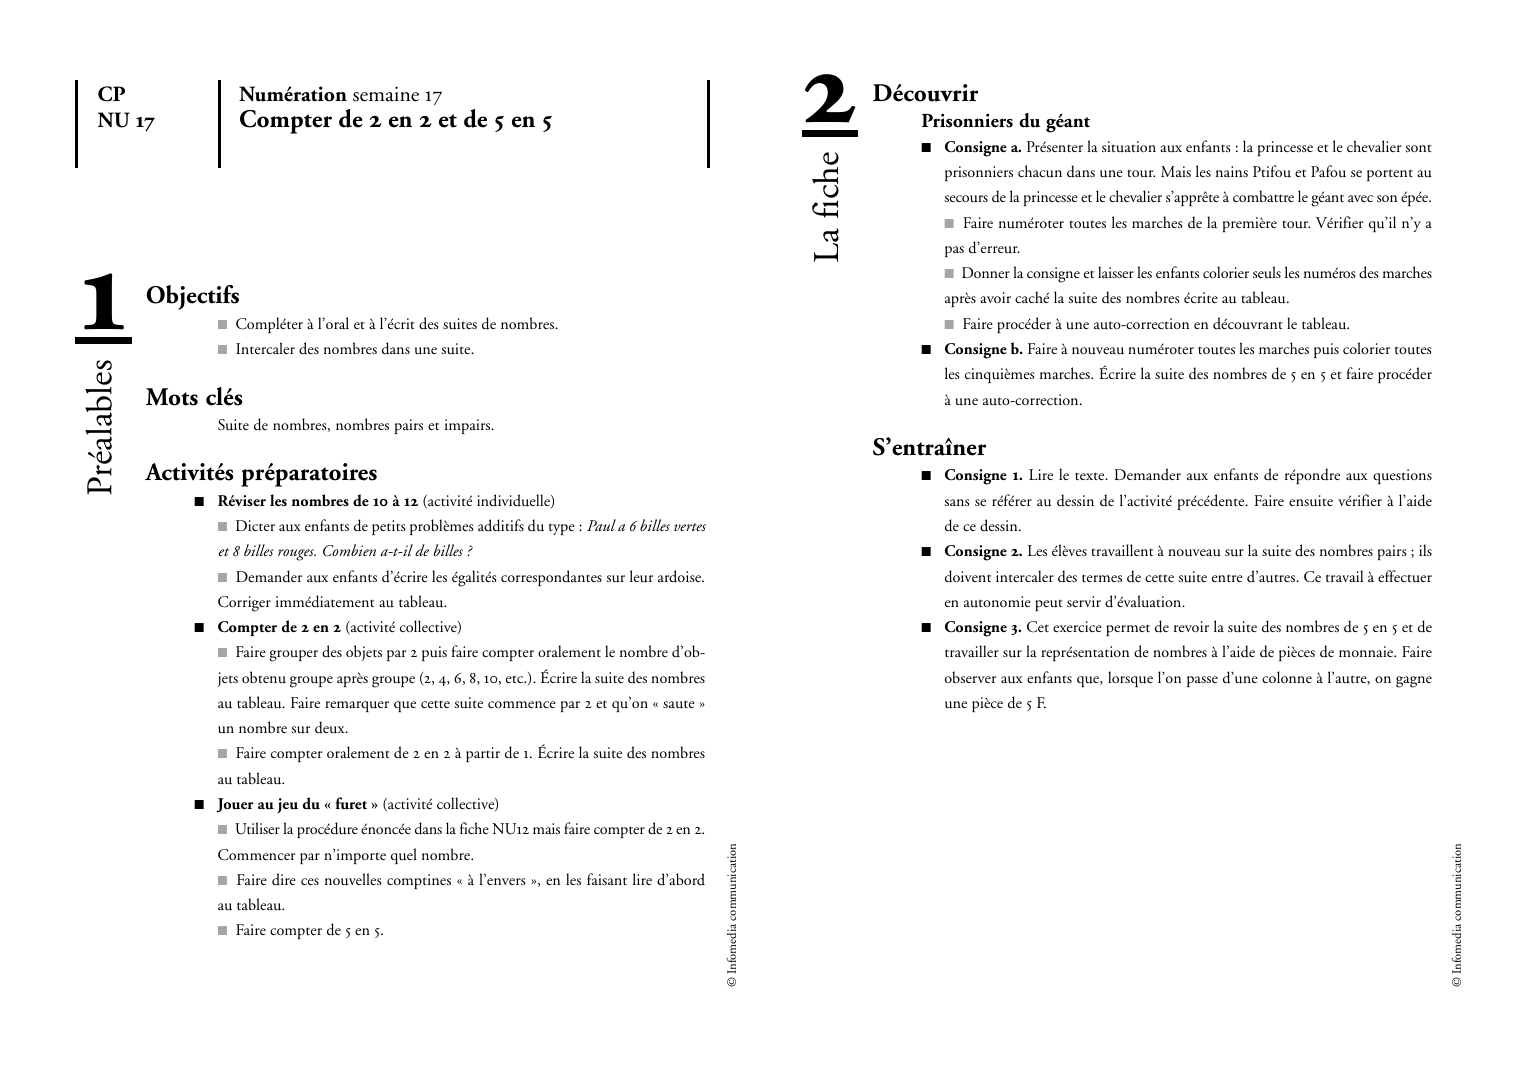 Prévisualisation du document Compter de 2 en 2 et de 5 en 5DécouvrirPrisonniers du géanto Consigne a.